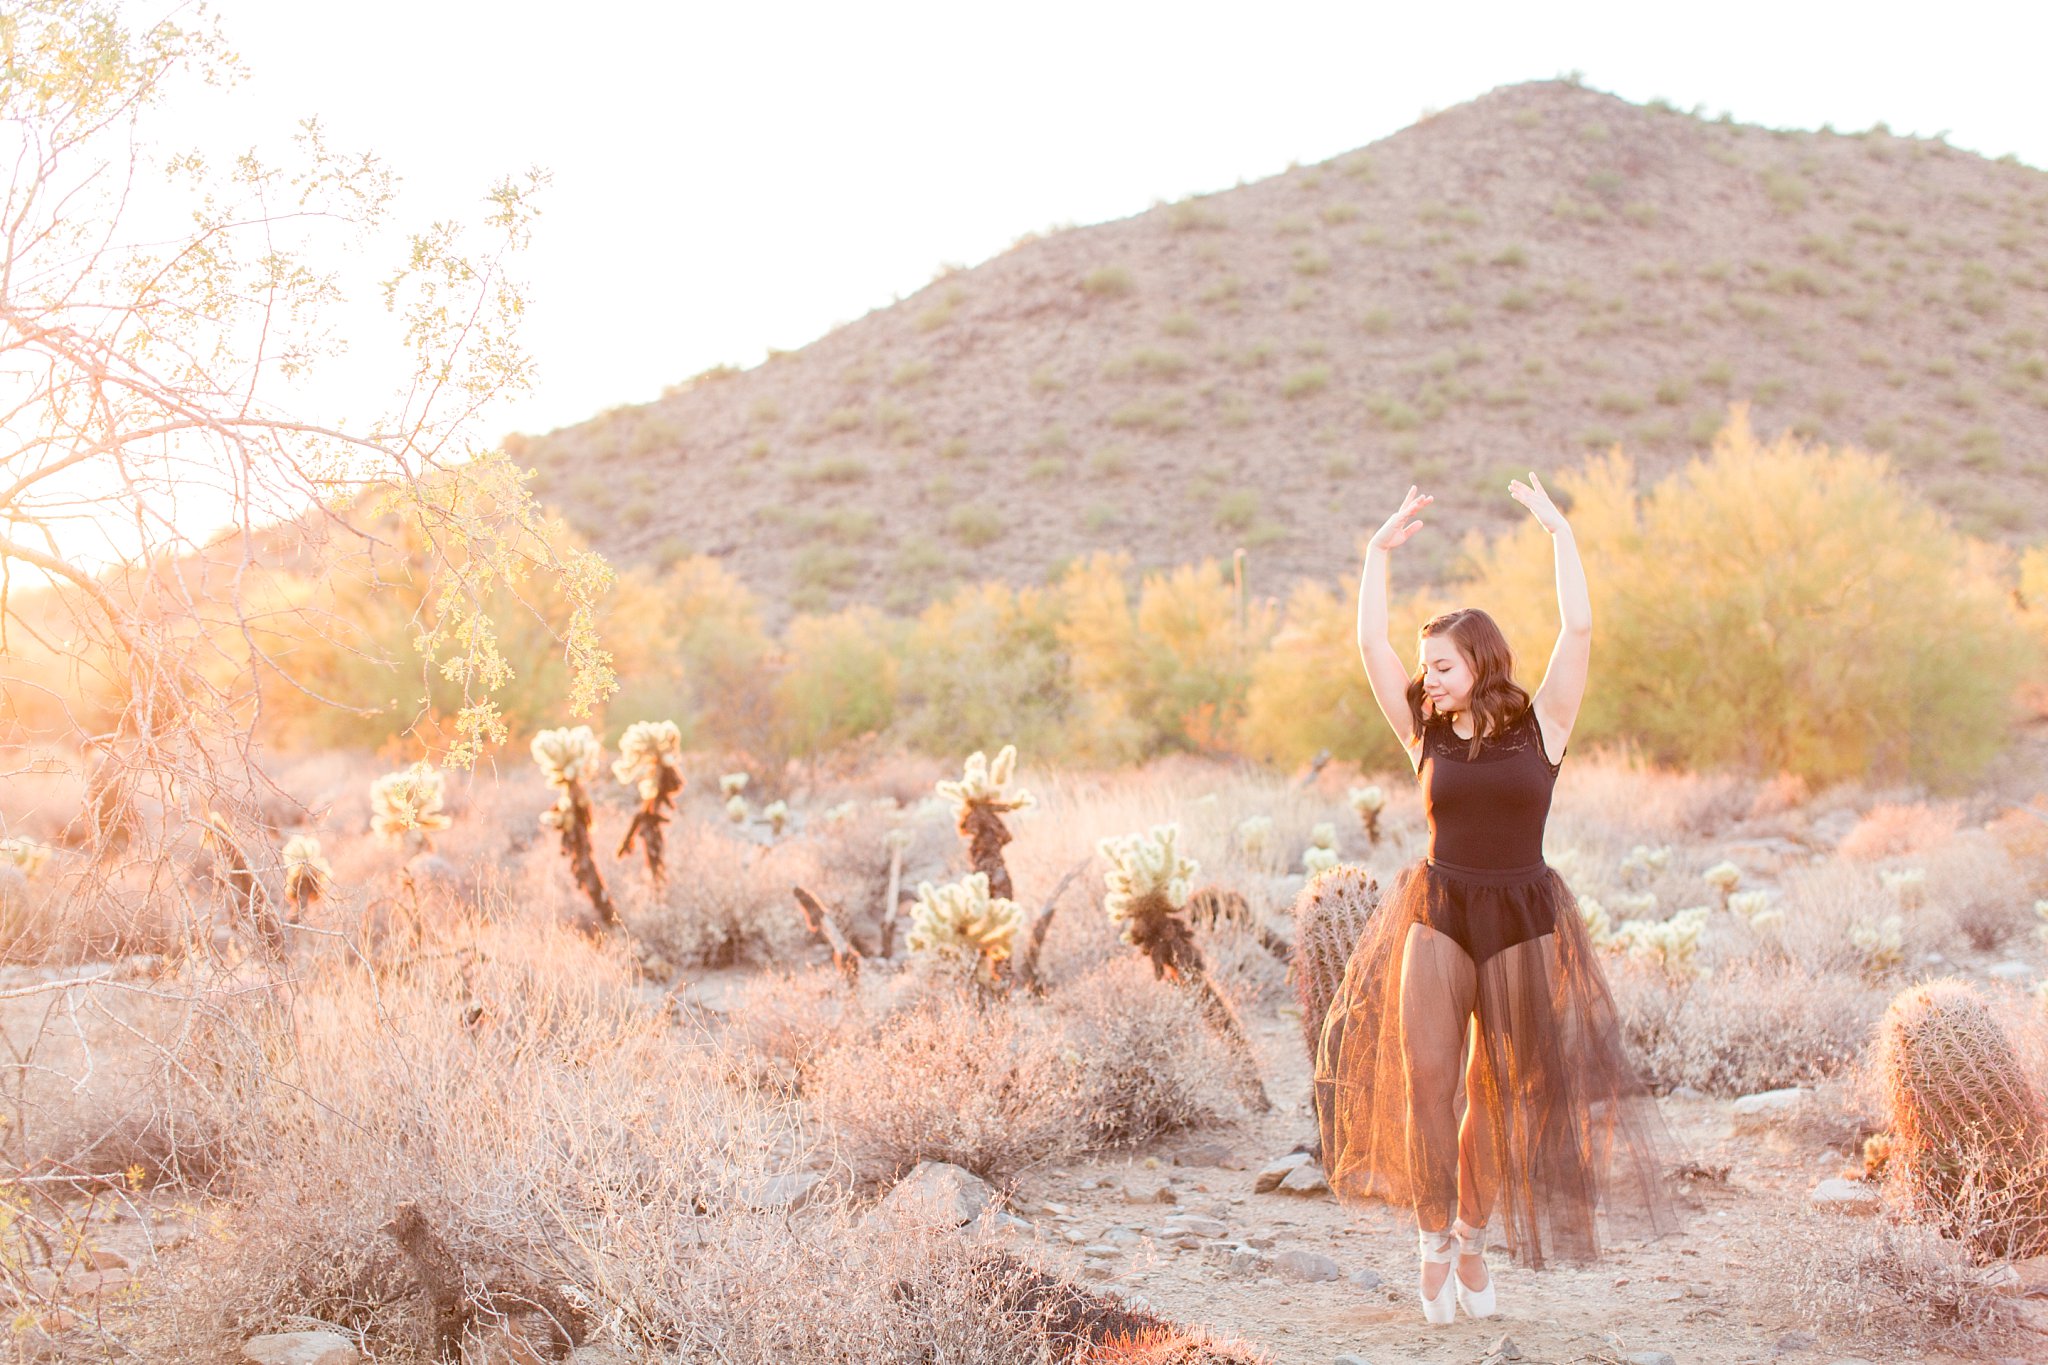 dancing in the desert